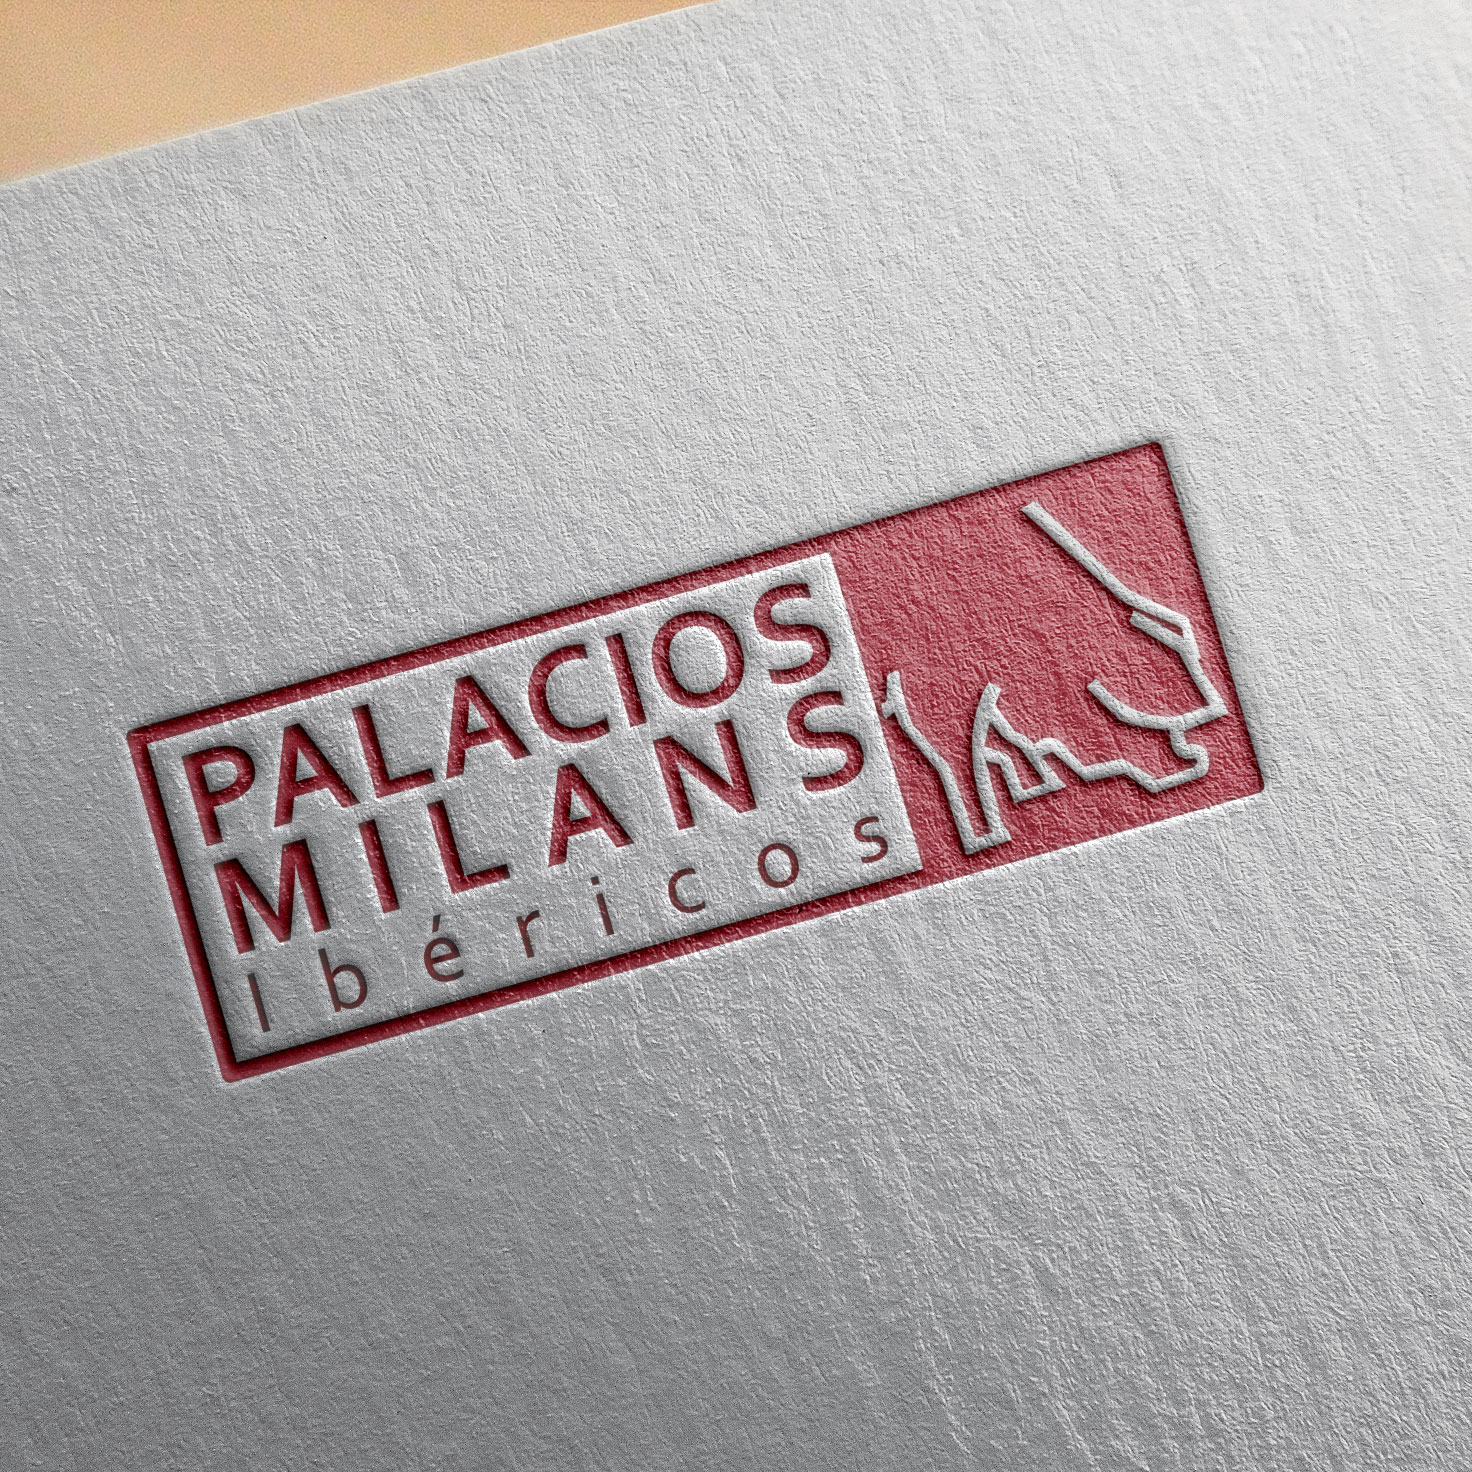 Diseño de logotipo Ibéricos Palacios Milans